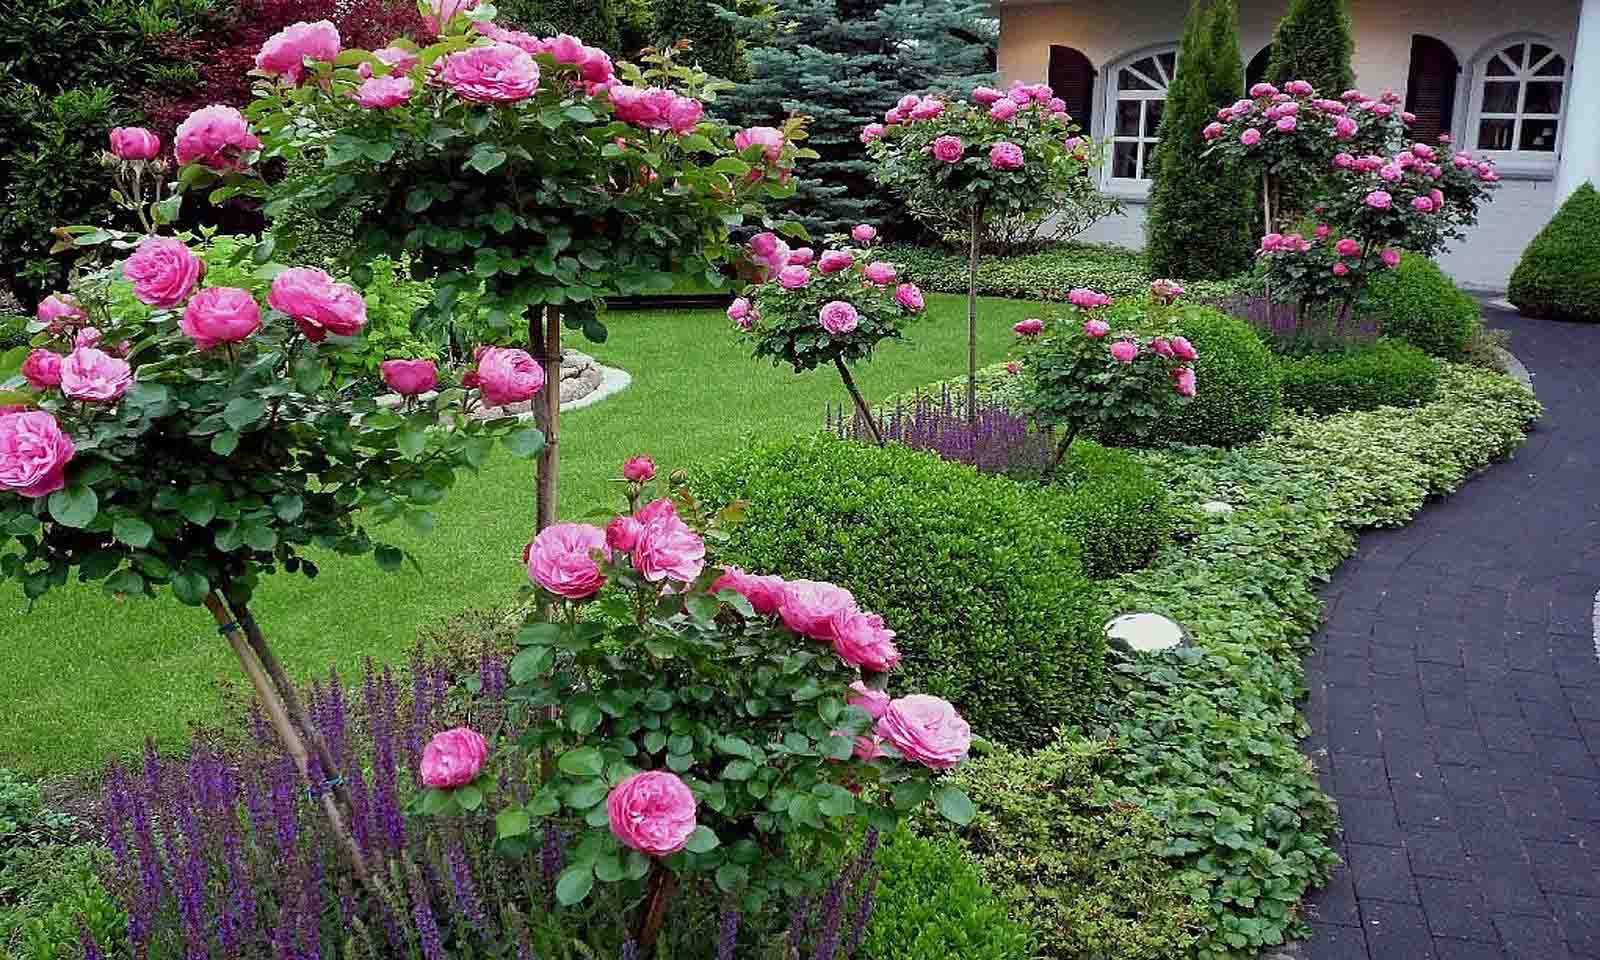 розы в саду